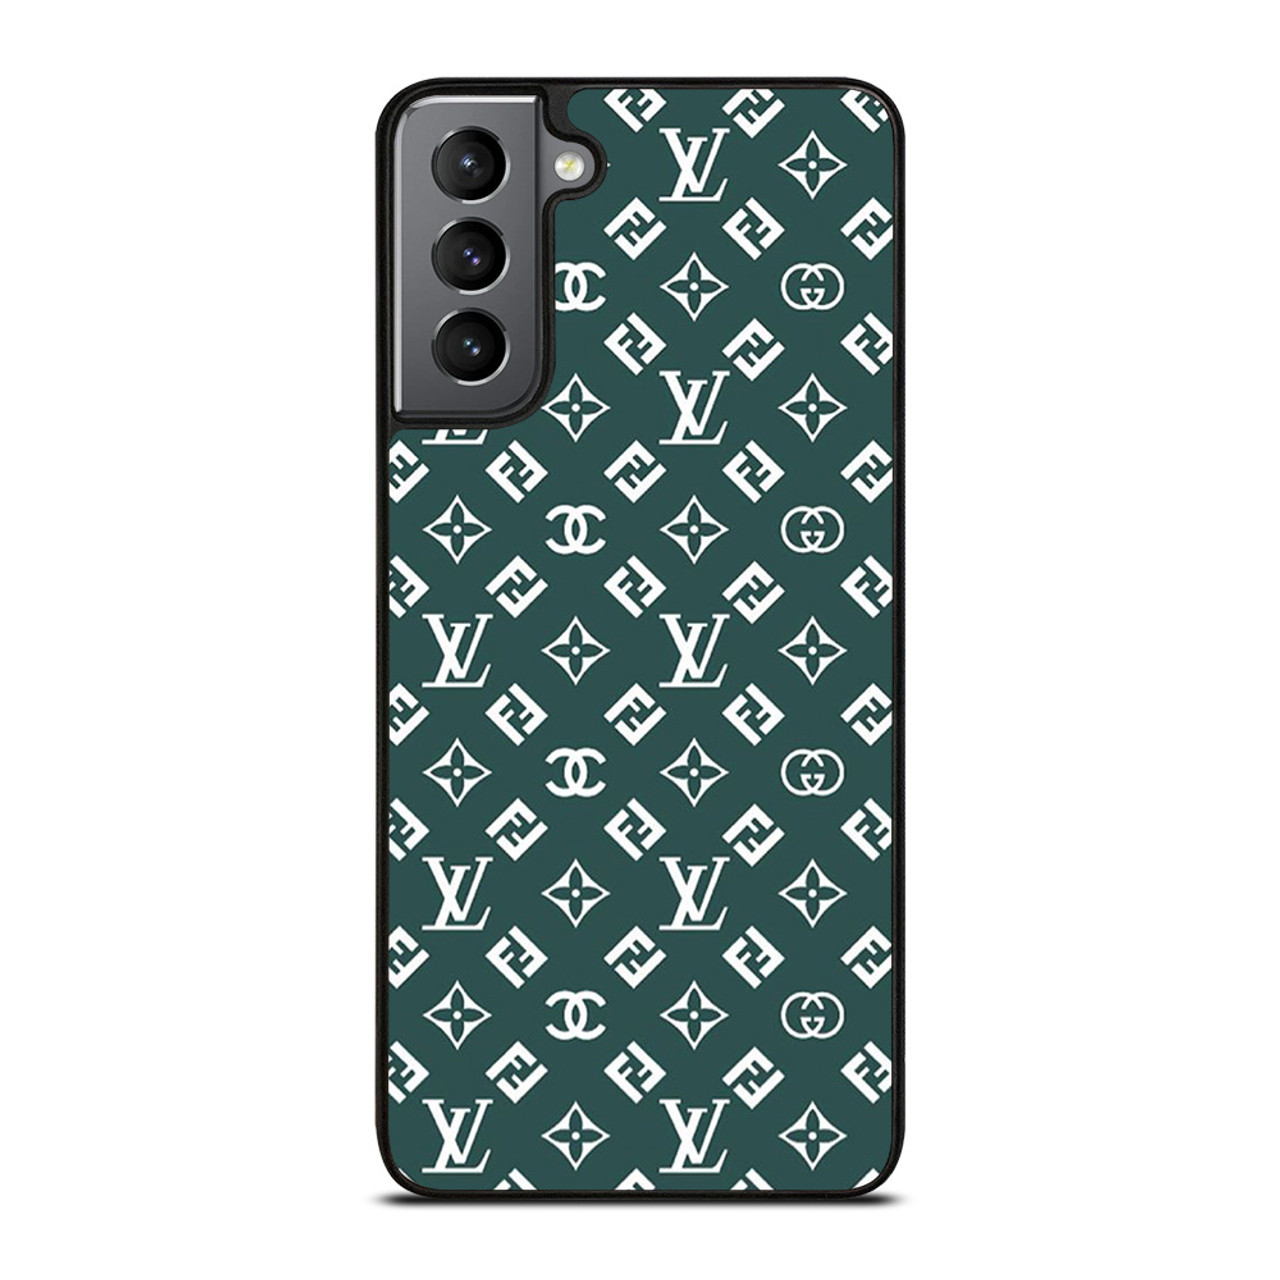 Galaxy S9 Case Louis Vuitton 